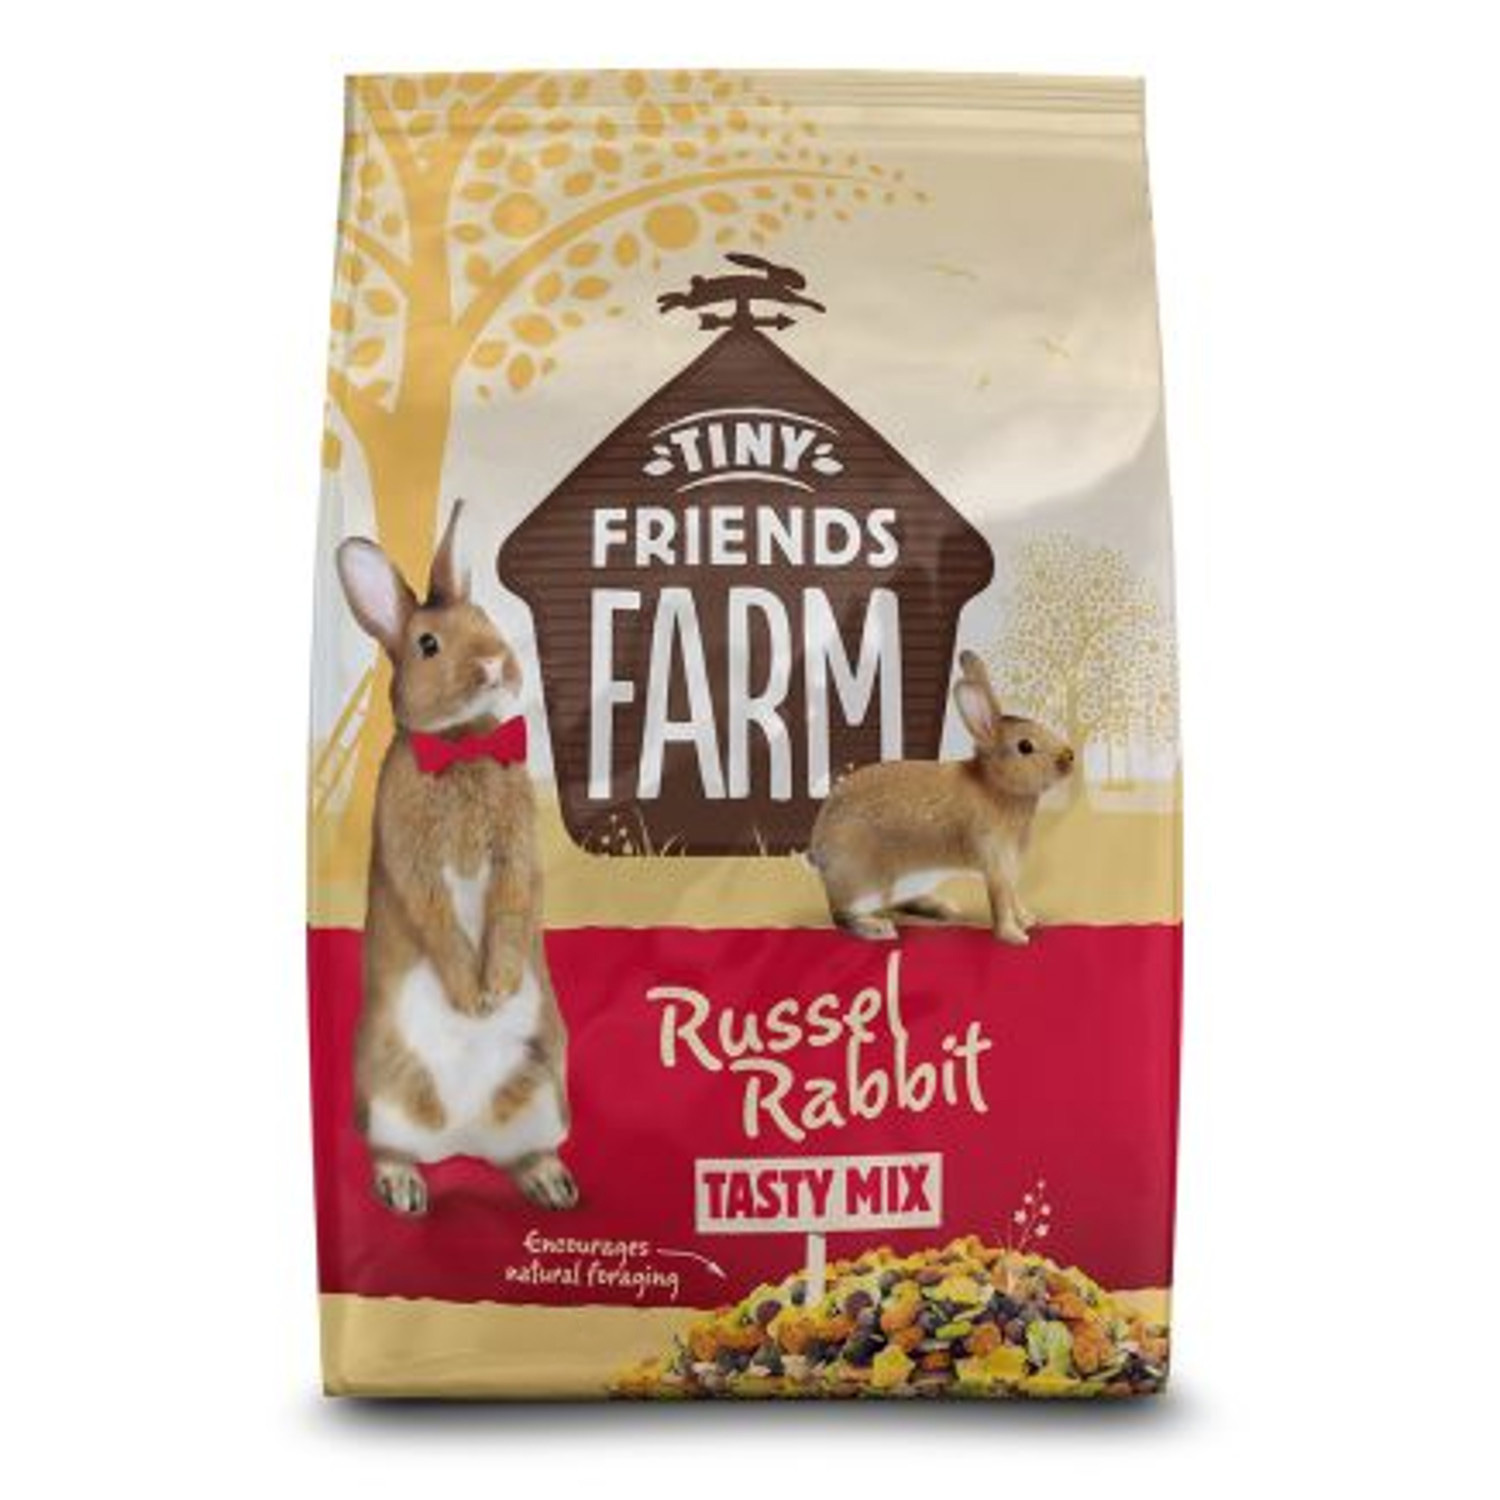 Tiny Friends Farm Russel Rabbit Tasty Mix Pet Food Image